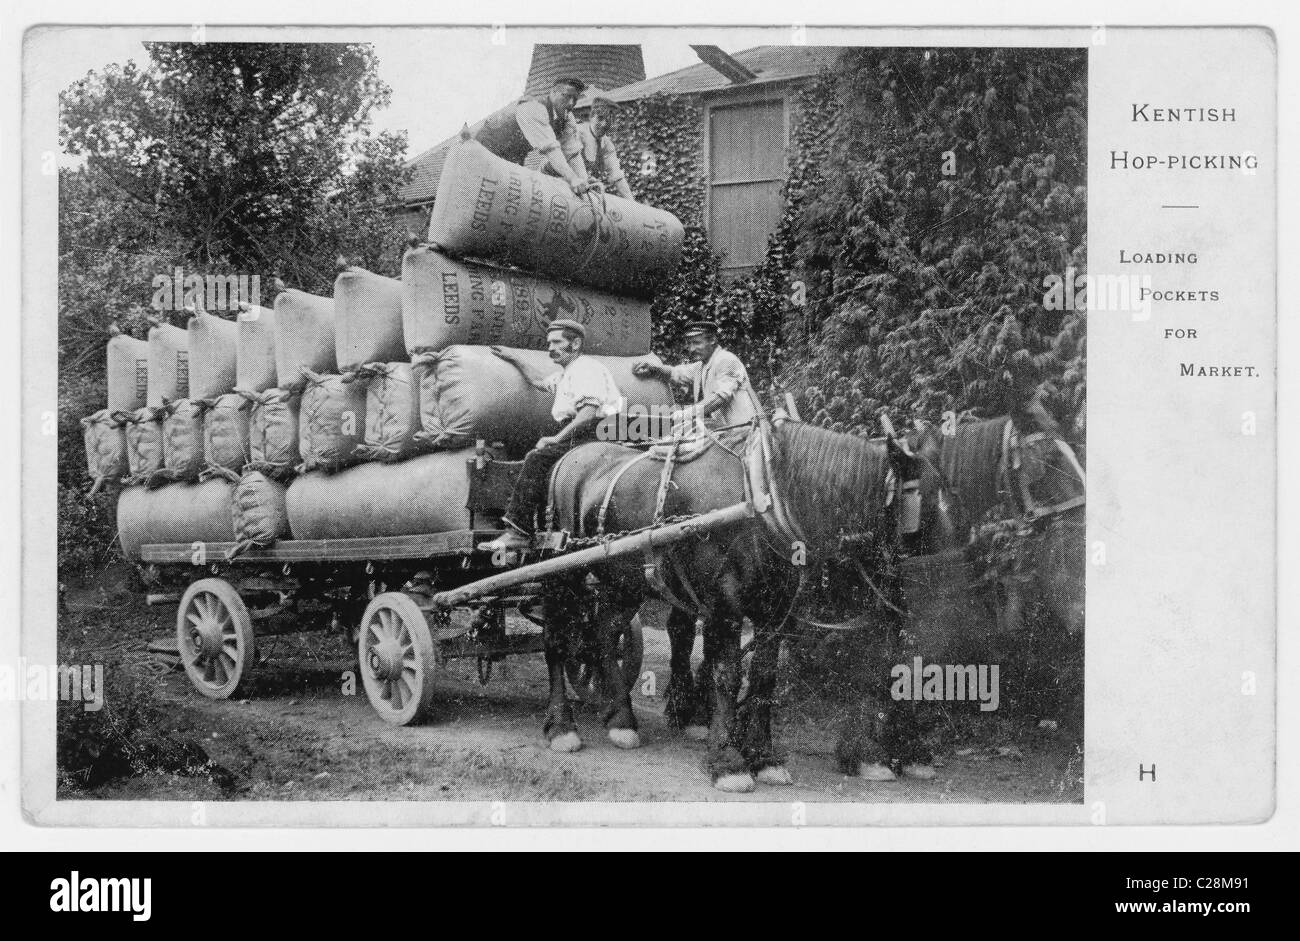 Original Grußkarte mit Kentish-Hopfenpflücker, die die Hopfentaschen für den Markt auf ein Pferd und einen Wagen laden, Anfang des 20. Jahrhunderts, in Kent, England, britische Arbeiter Stockfoto